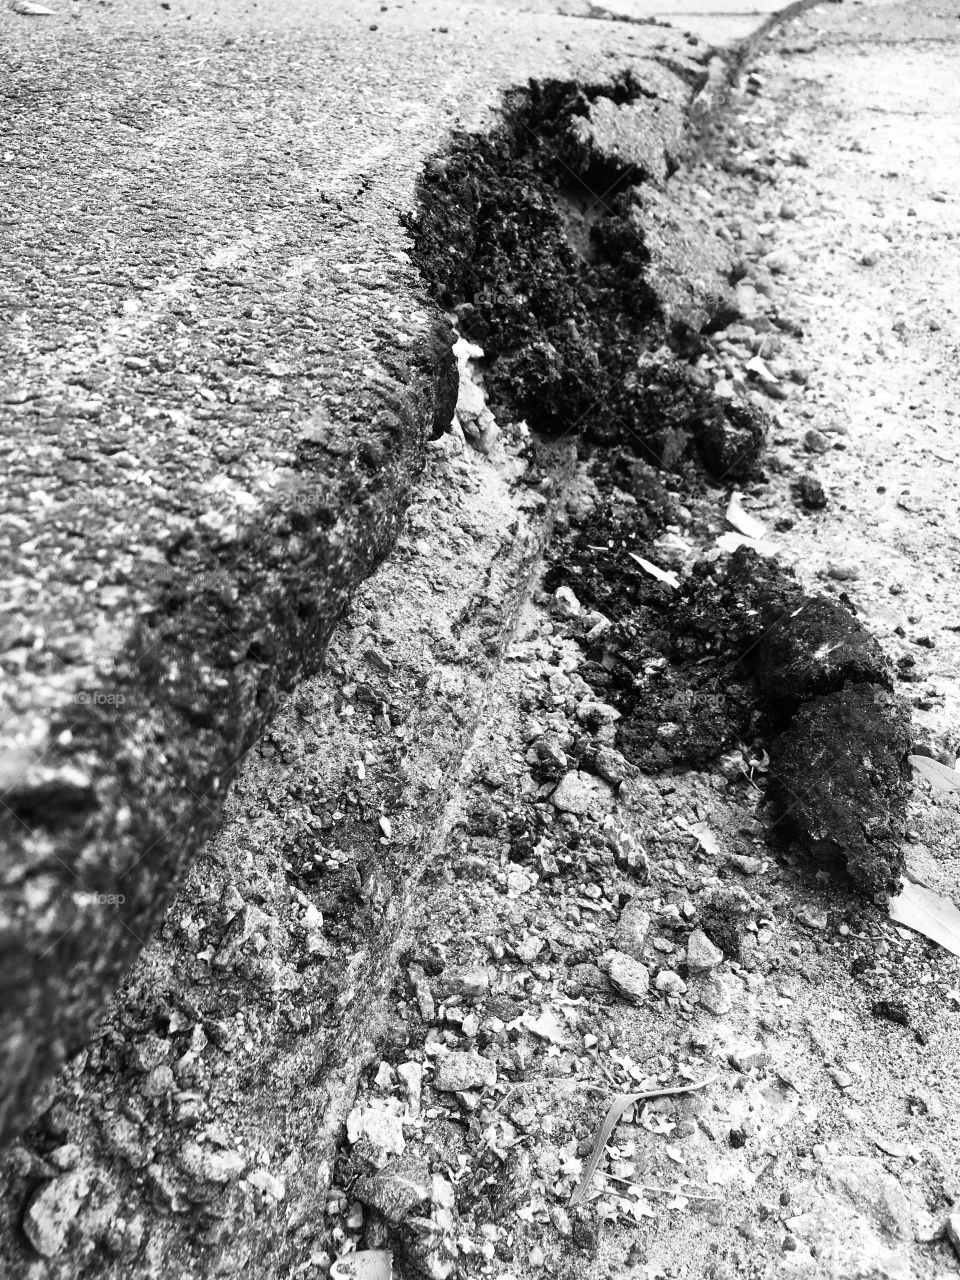 Dramatized road erosion